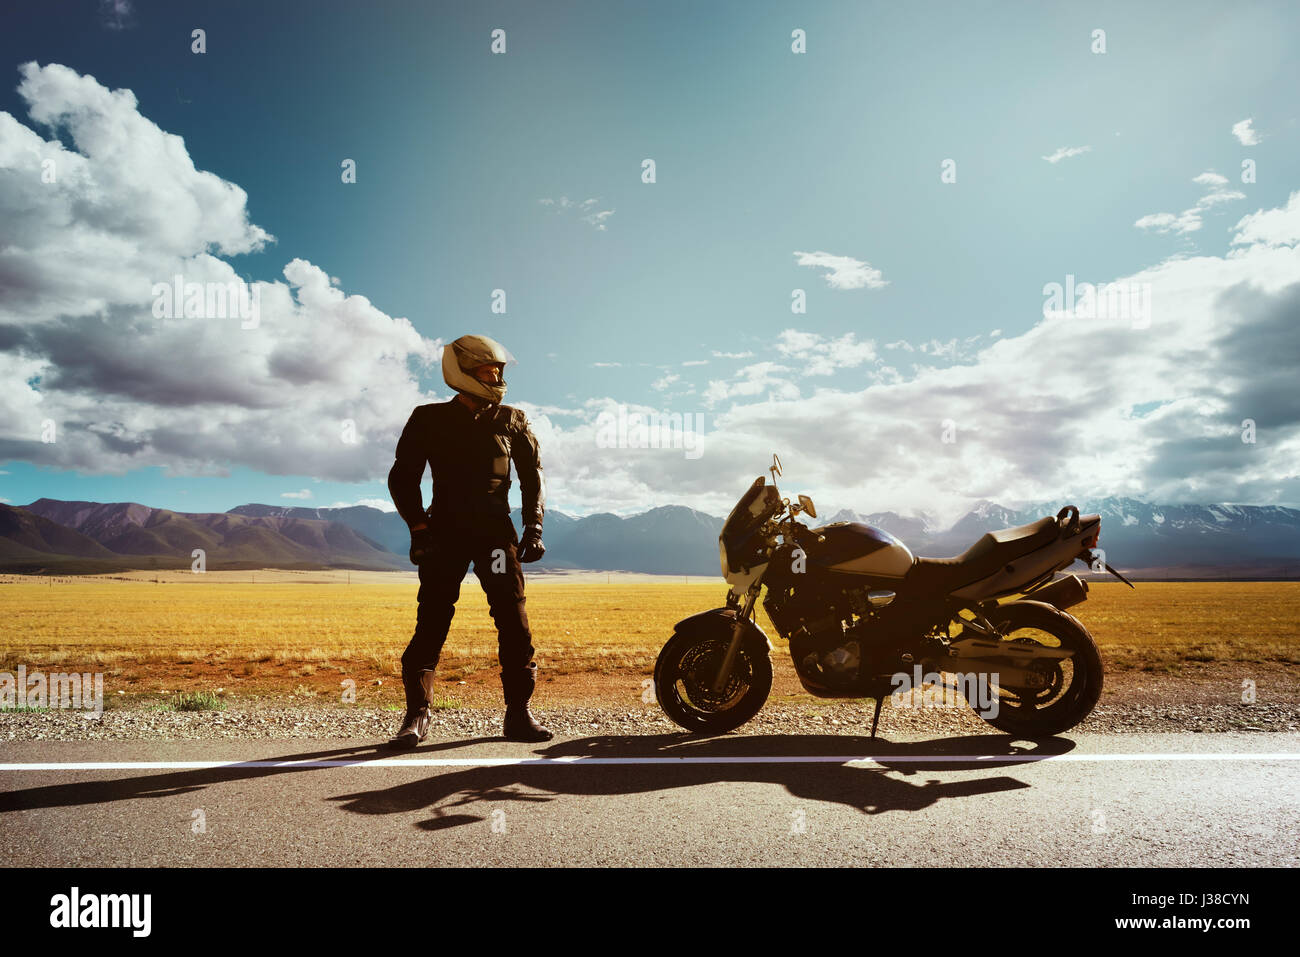 Moto avec motard se dresse sur la route sur fond de montagnes. Un espace réservé au texte Banque D'Images